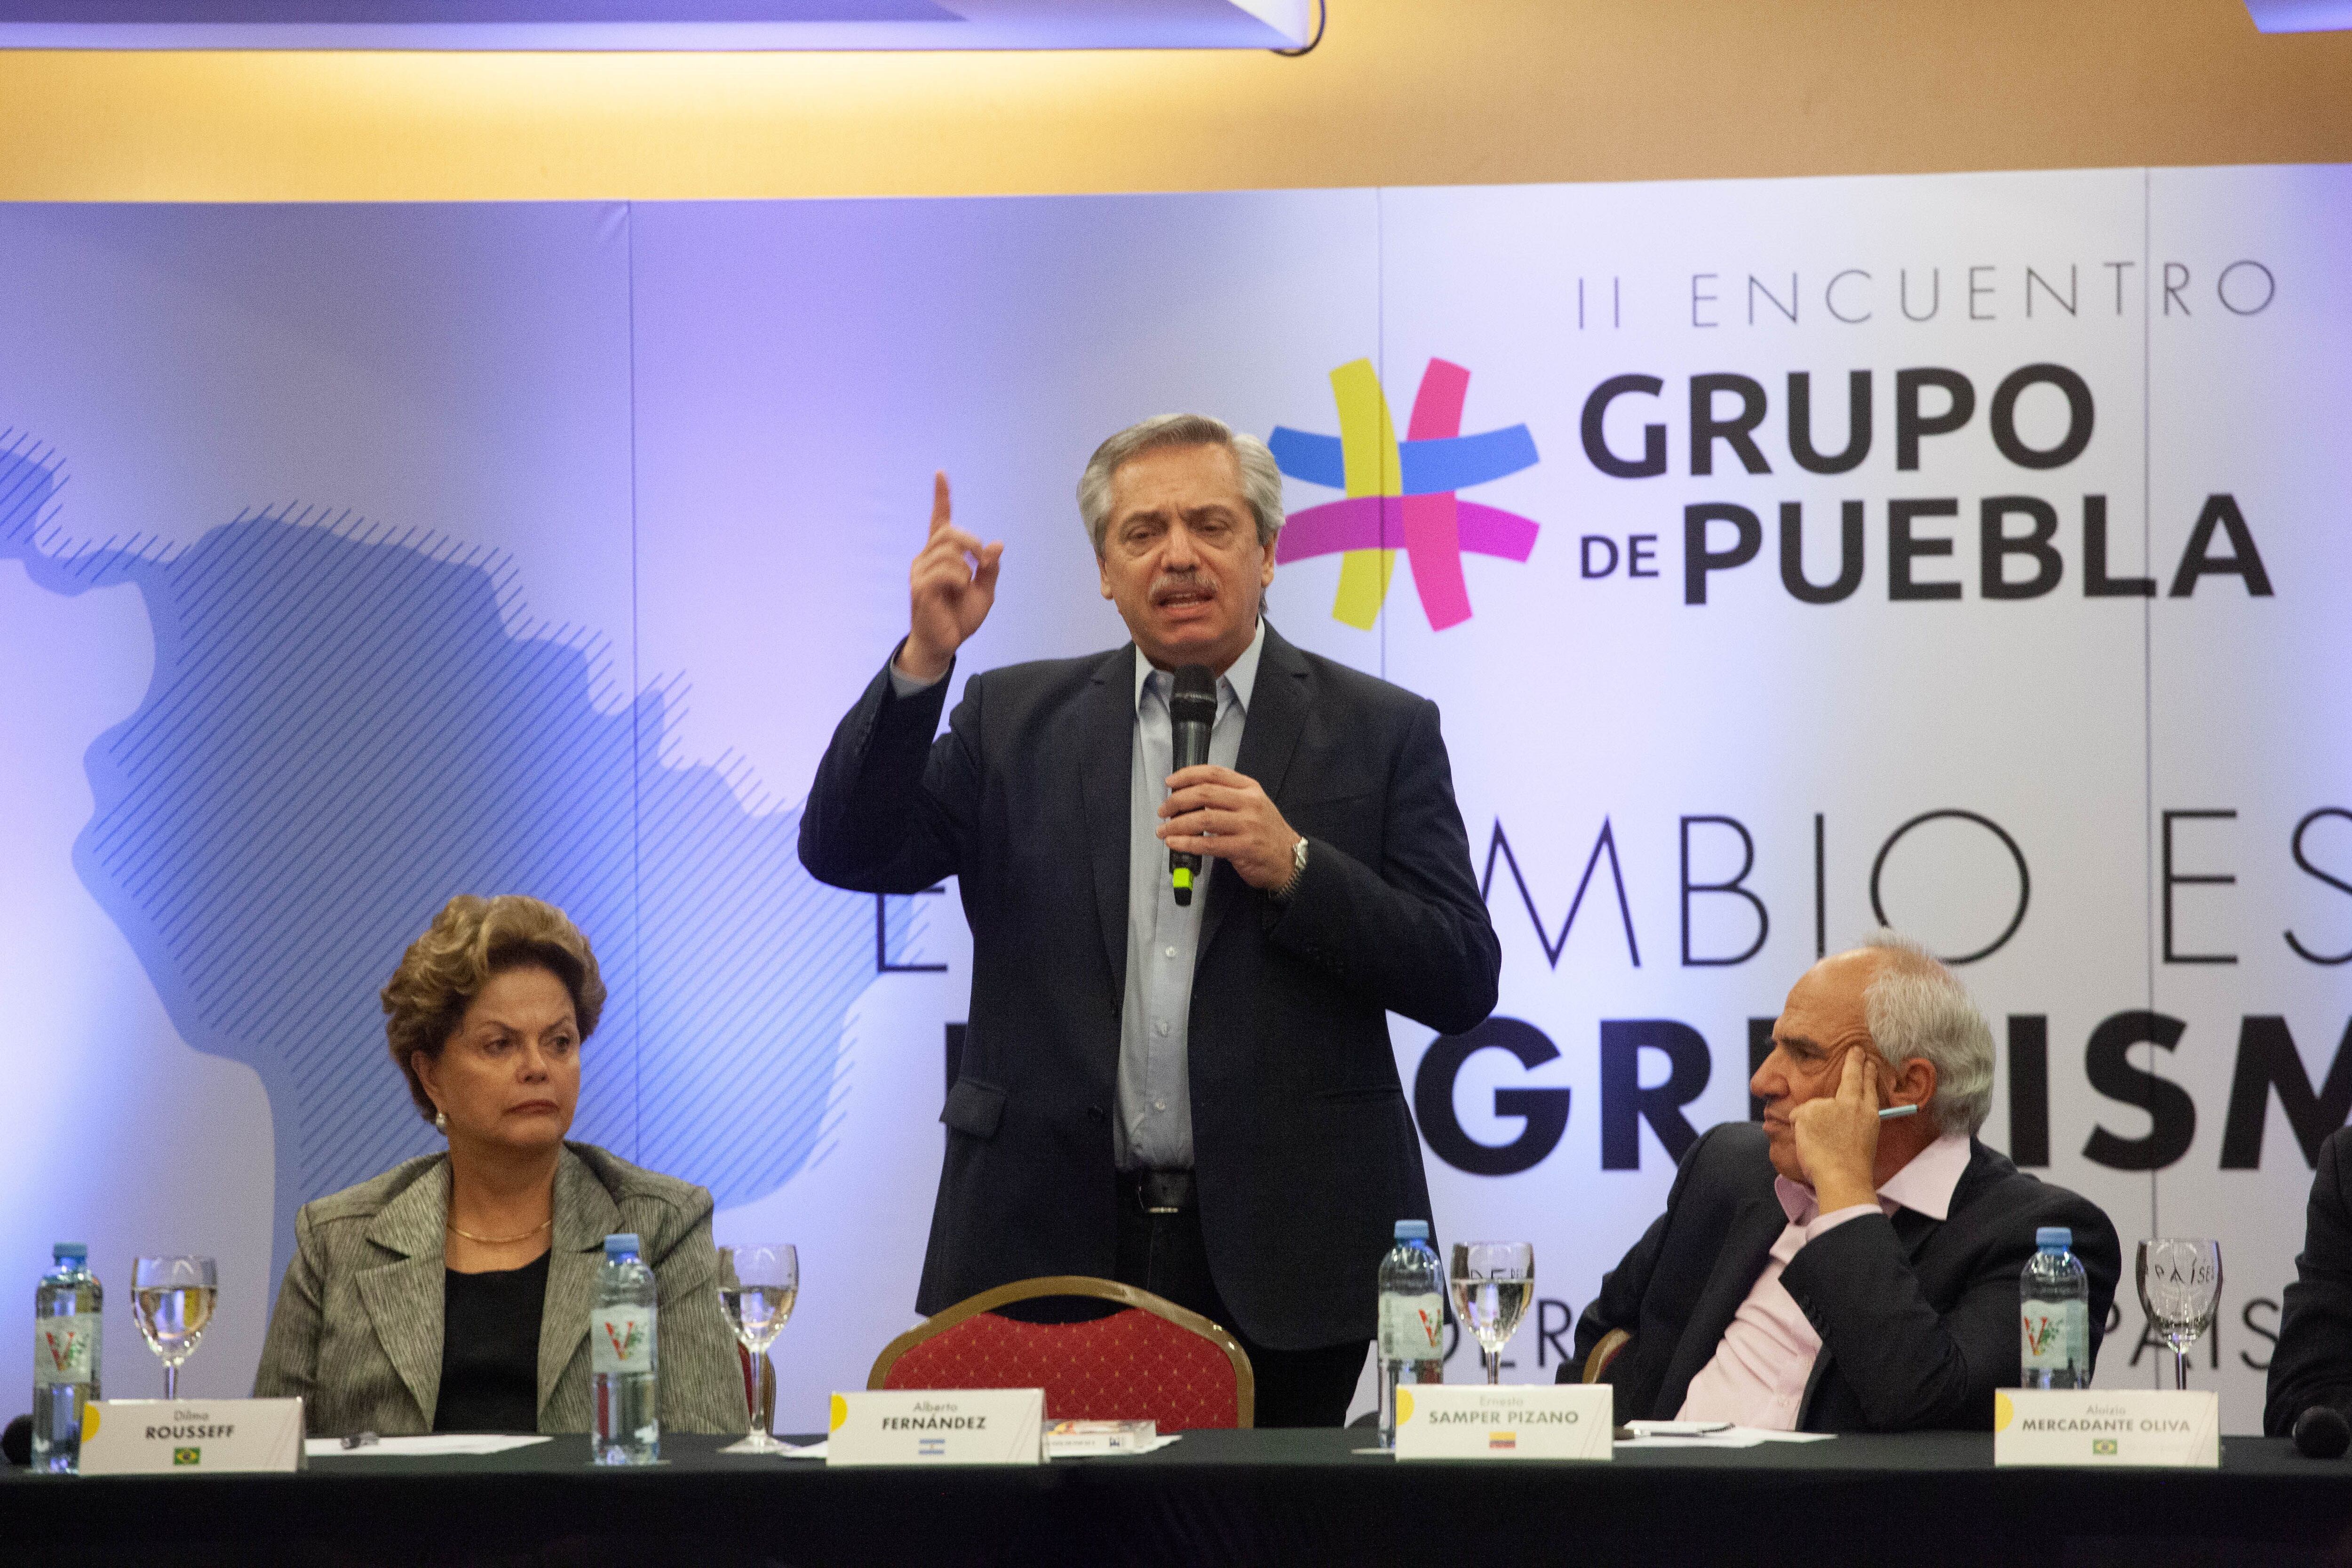 El presidente Alberto Fernández forma parte del Grupo de Puebla (PAULA ACUNZO / ZUMA PRESS / CONTACTOPHOTO) 